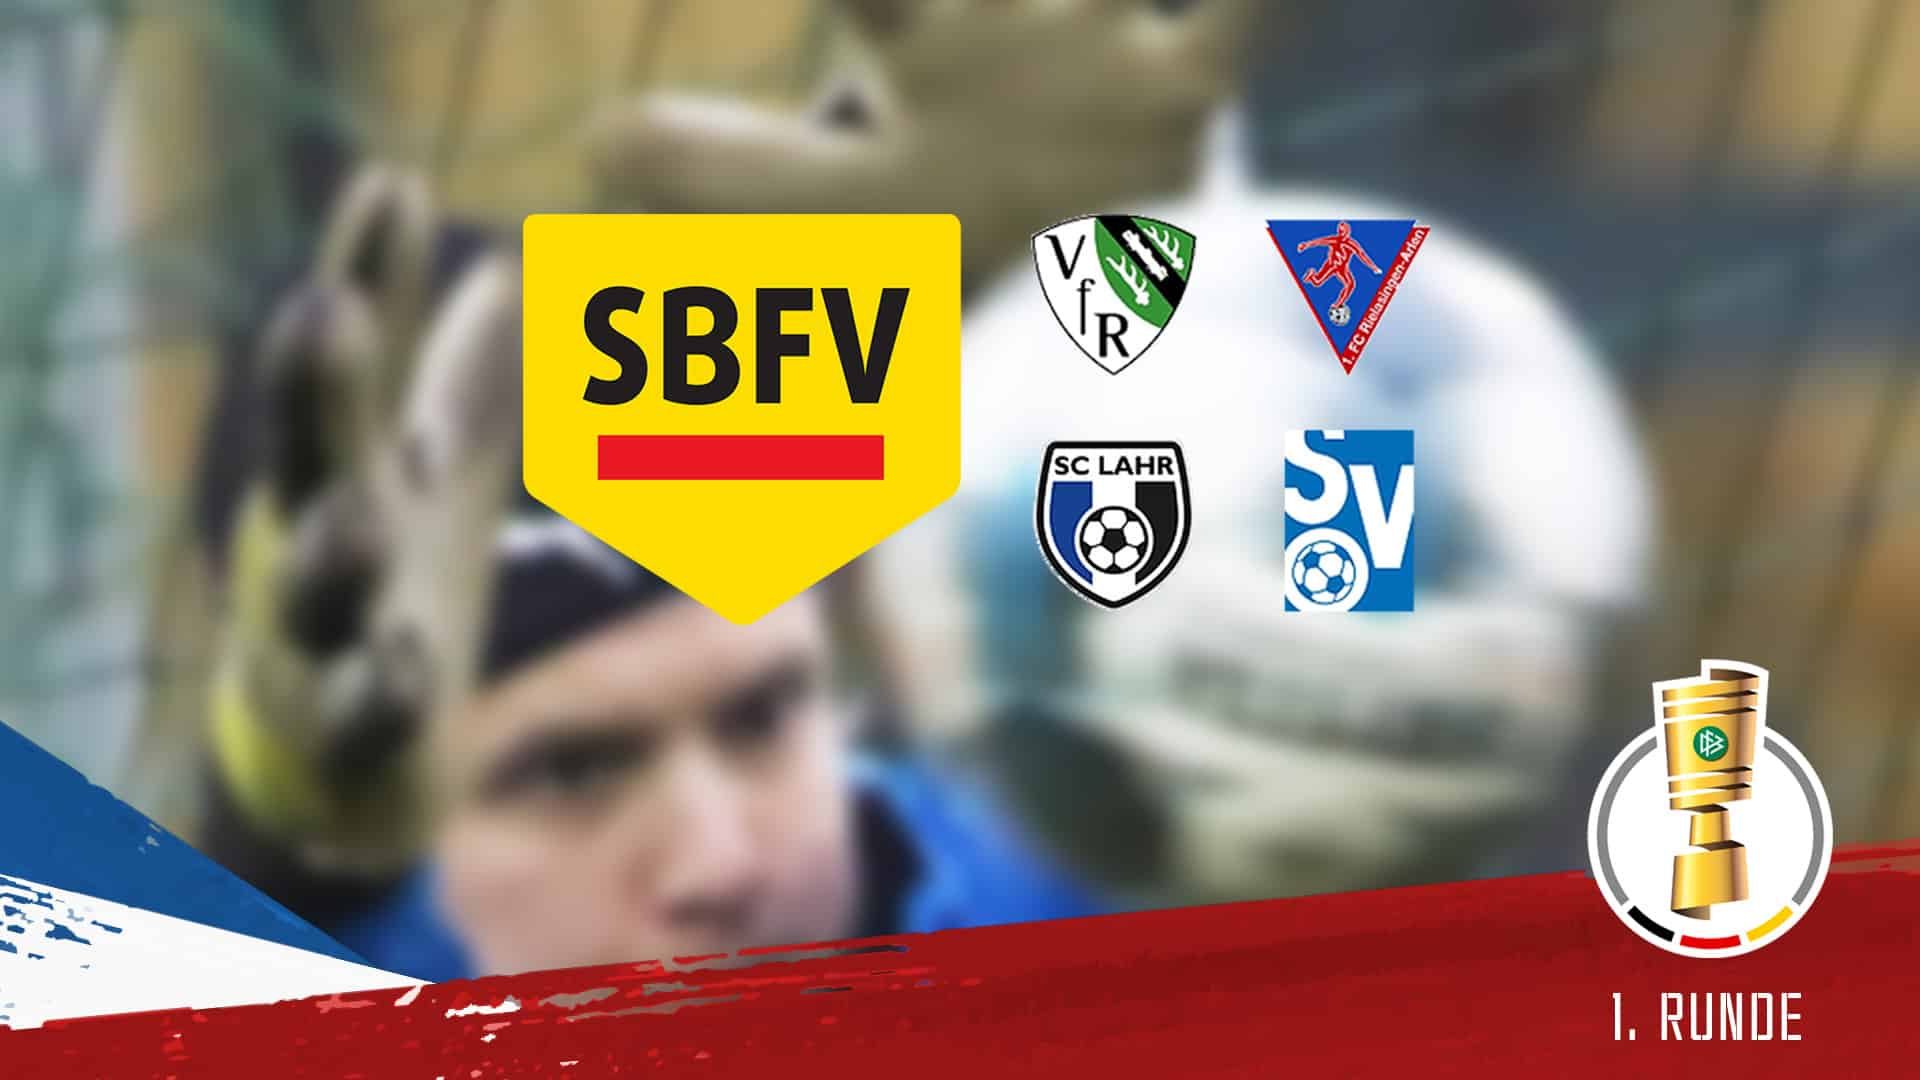 Für die KSV findet die 1. Runde des DFB-Pokals 19/20 in Südbaden statt